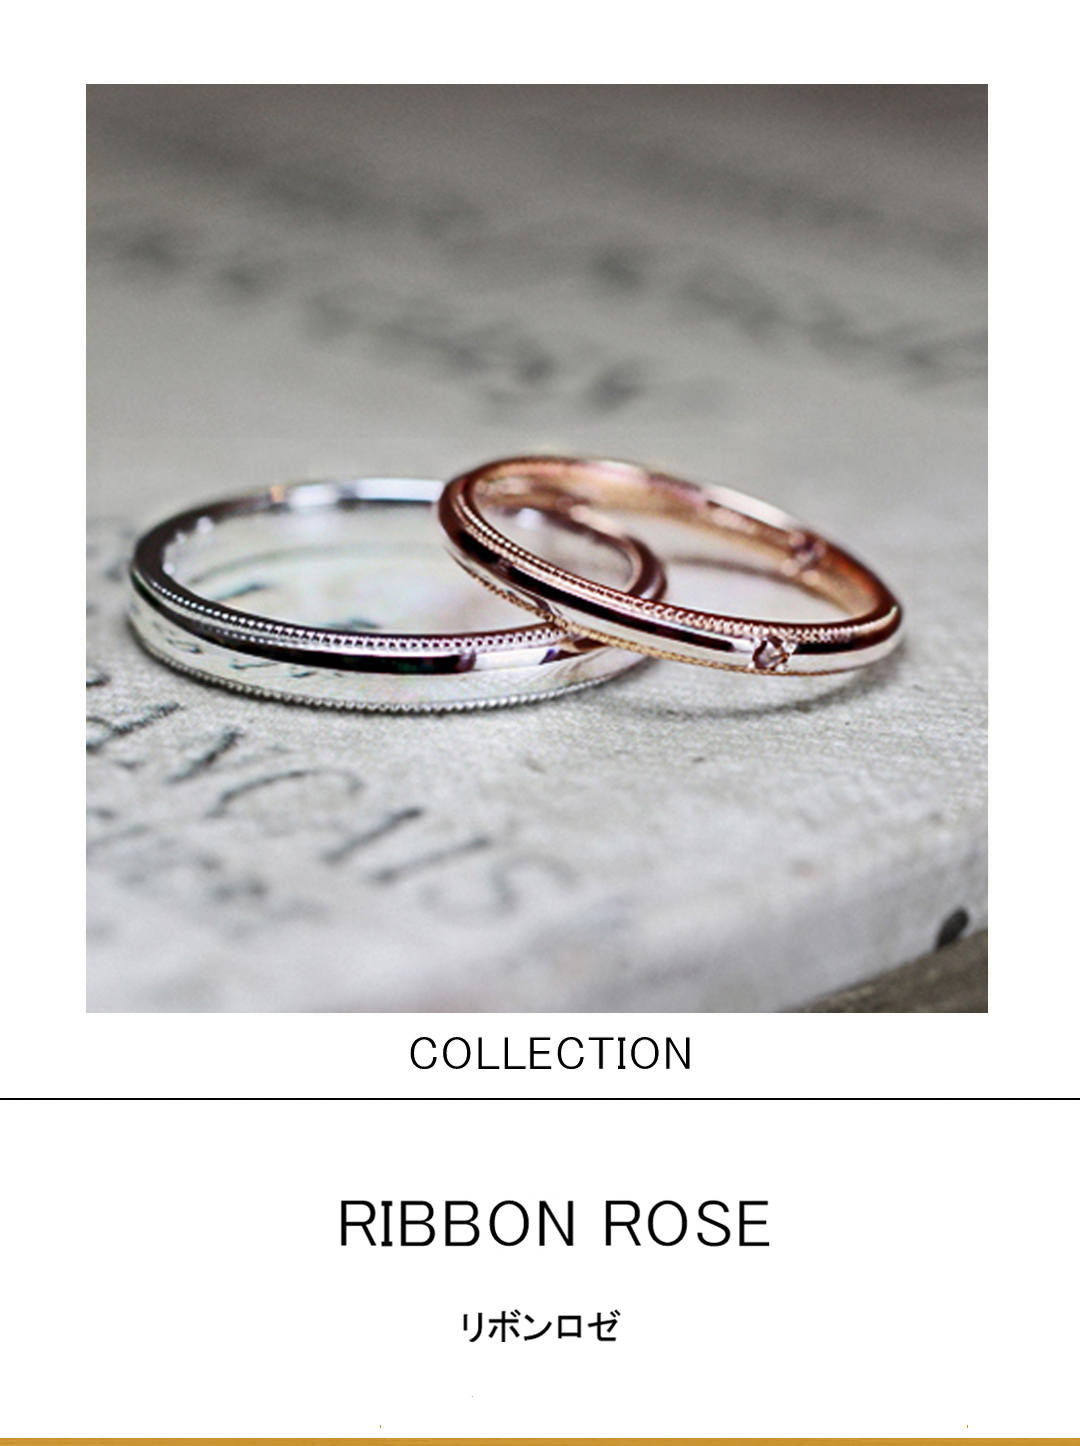 ピンクゴールドとプラチナを組み合わせたコンビカラーの結婚指輪のサムネイル